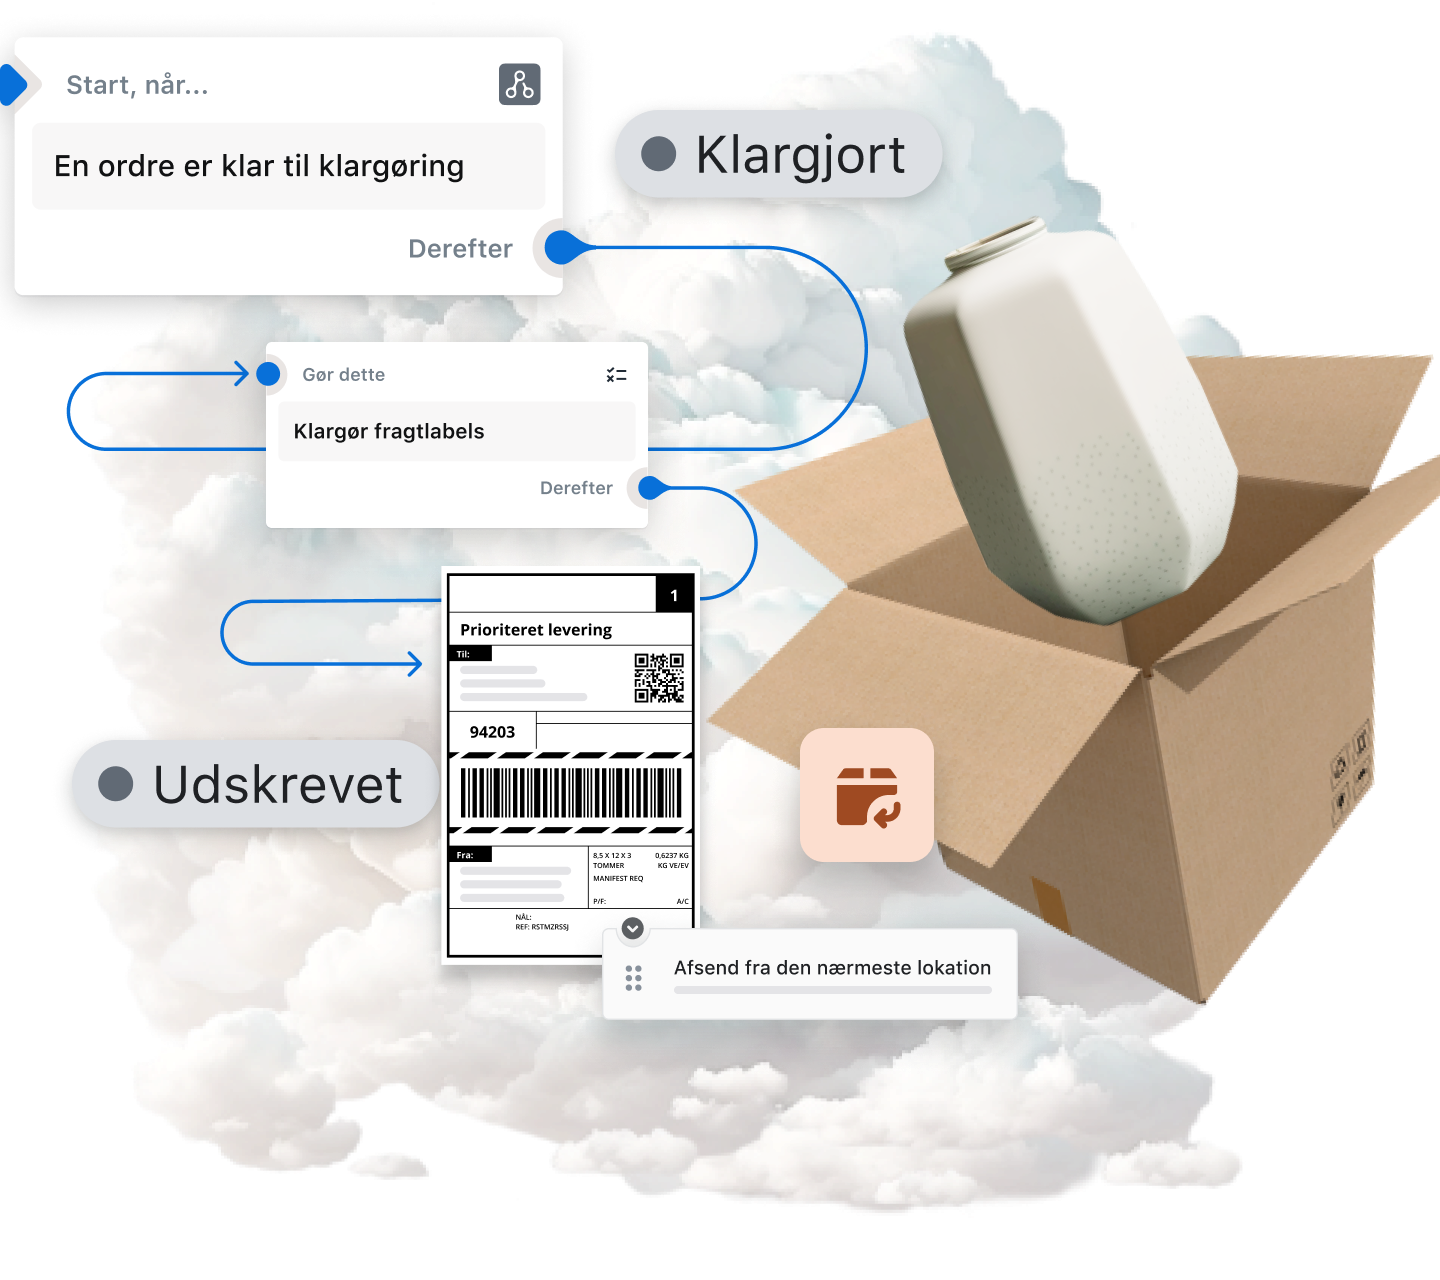 Billedet viser et diagram over processen med bestilling og afsendelse af varer. Det begynder med en sky, som repræsenterer den digitale verden, og der er pile, som peger mod en række hændelser, der beskriver hele flowet med ordrebehandling, klargøring, levering og håndtering af returneringer. Der er en kasse med en vase stikkende ud, som repræsenterer det købte produkt, hvilket viser, at varerne er klargjort og sendt via Shopify efter onlinebestillingen. Diagrammet giver en samlet visuel præsentation af onlineshopping og leveringen fra den digitale verden til den fysiske verden.